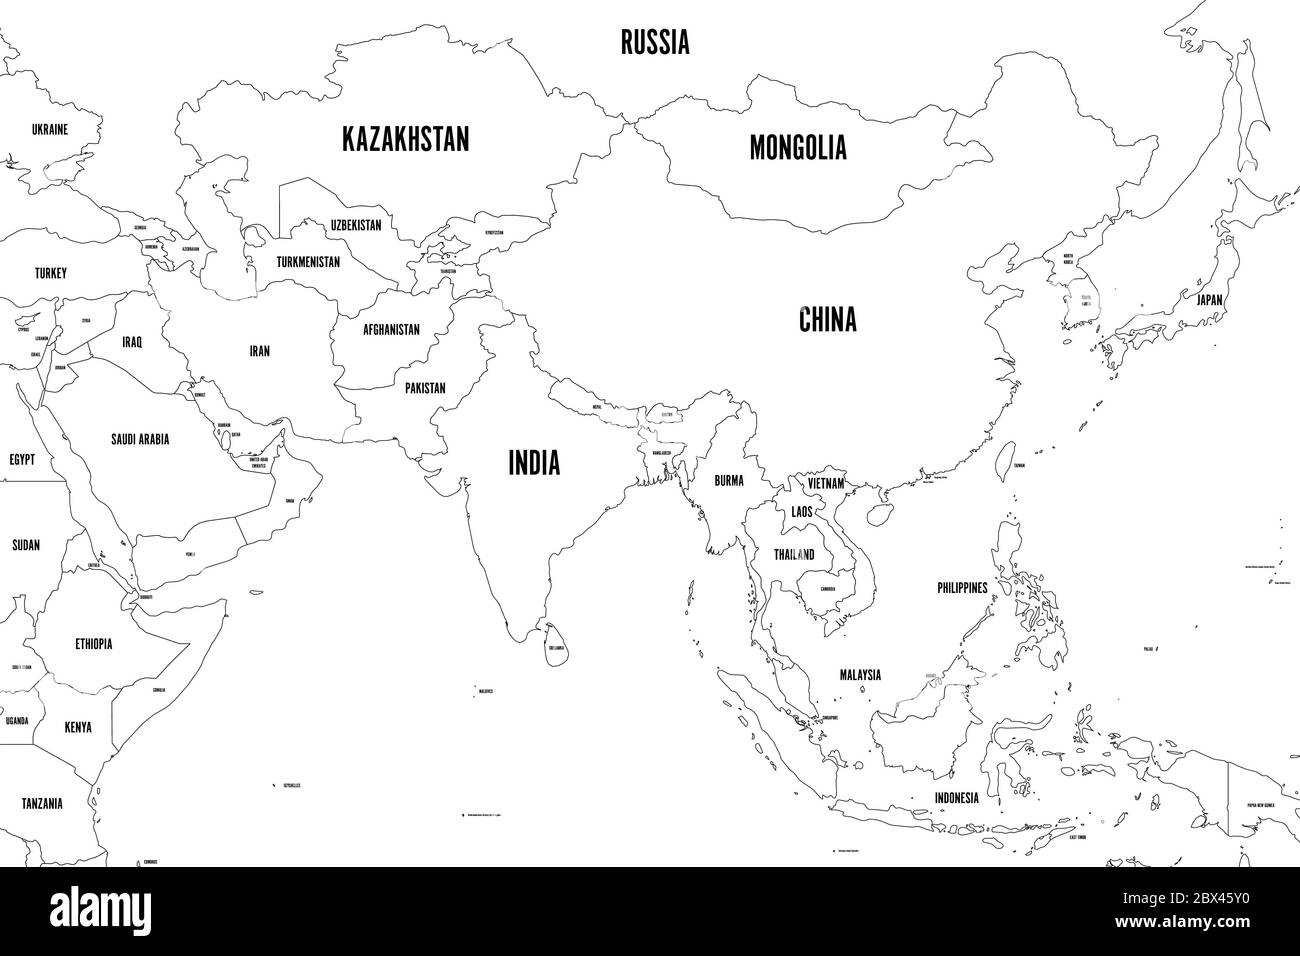 Carte politique de l'Asie occidentale, méridionale et orientale. Bordures noires fines. Illustration vectorielle. Illustration de Vecteur